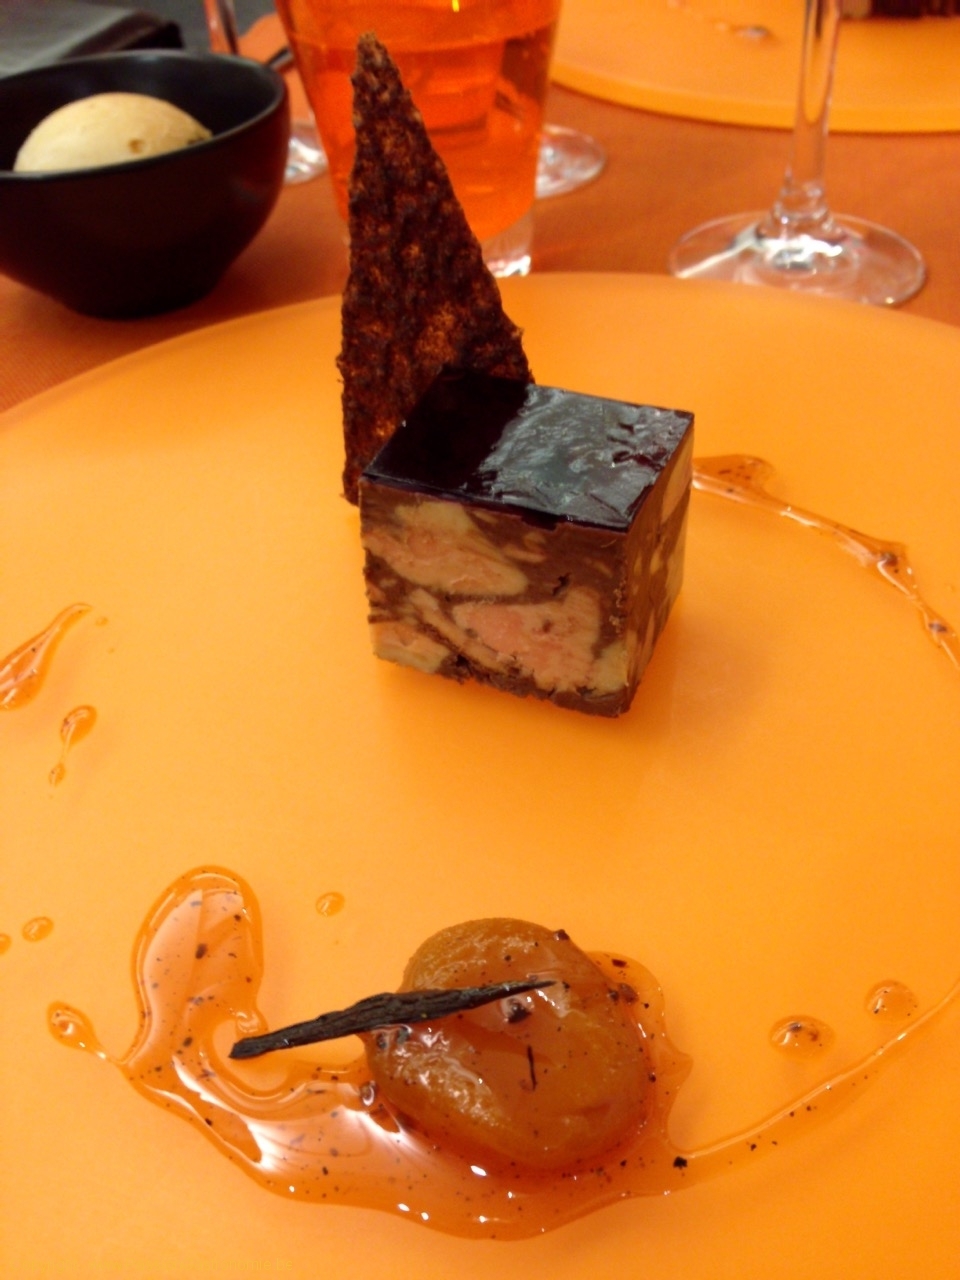 Cubisme de foie gras marbré au chocolat, mendiant de fruits secs, tuile au grué de cacao